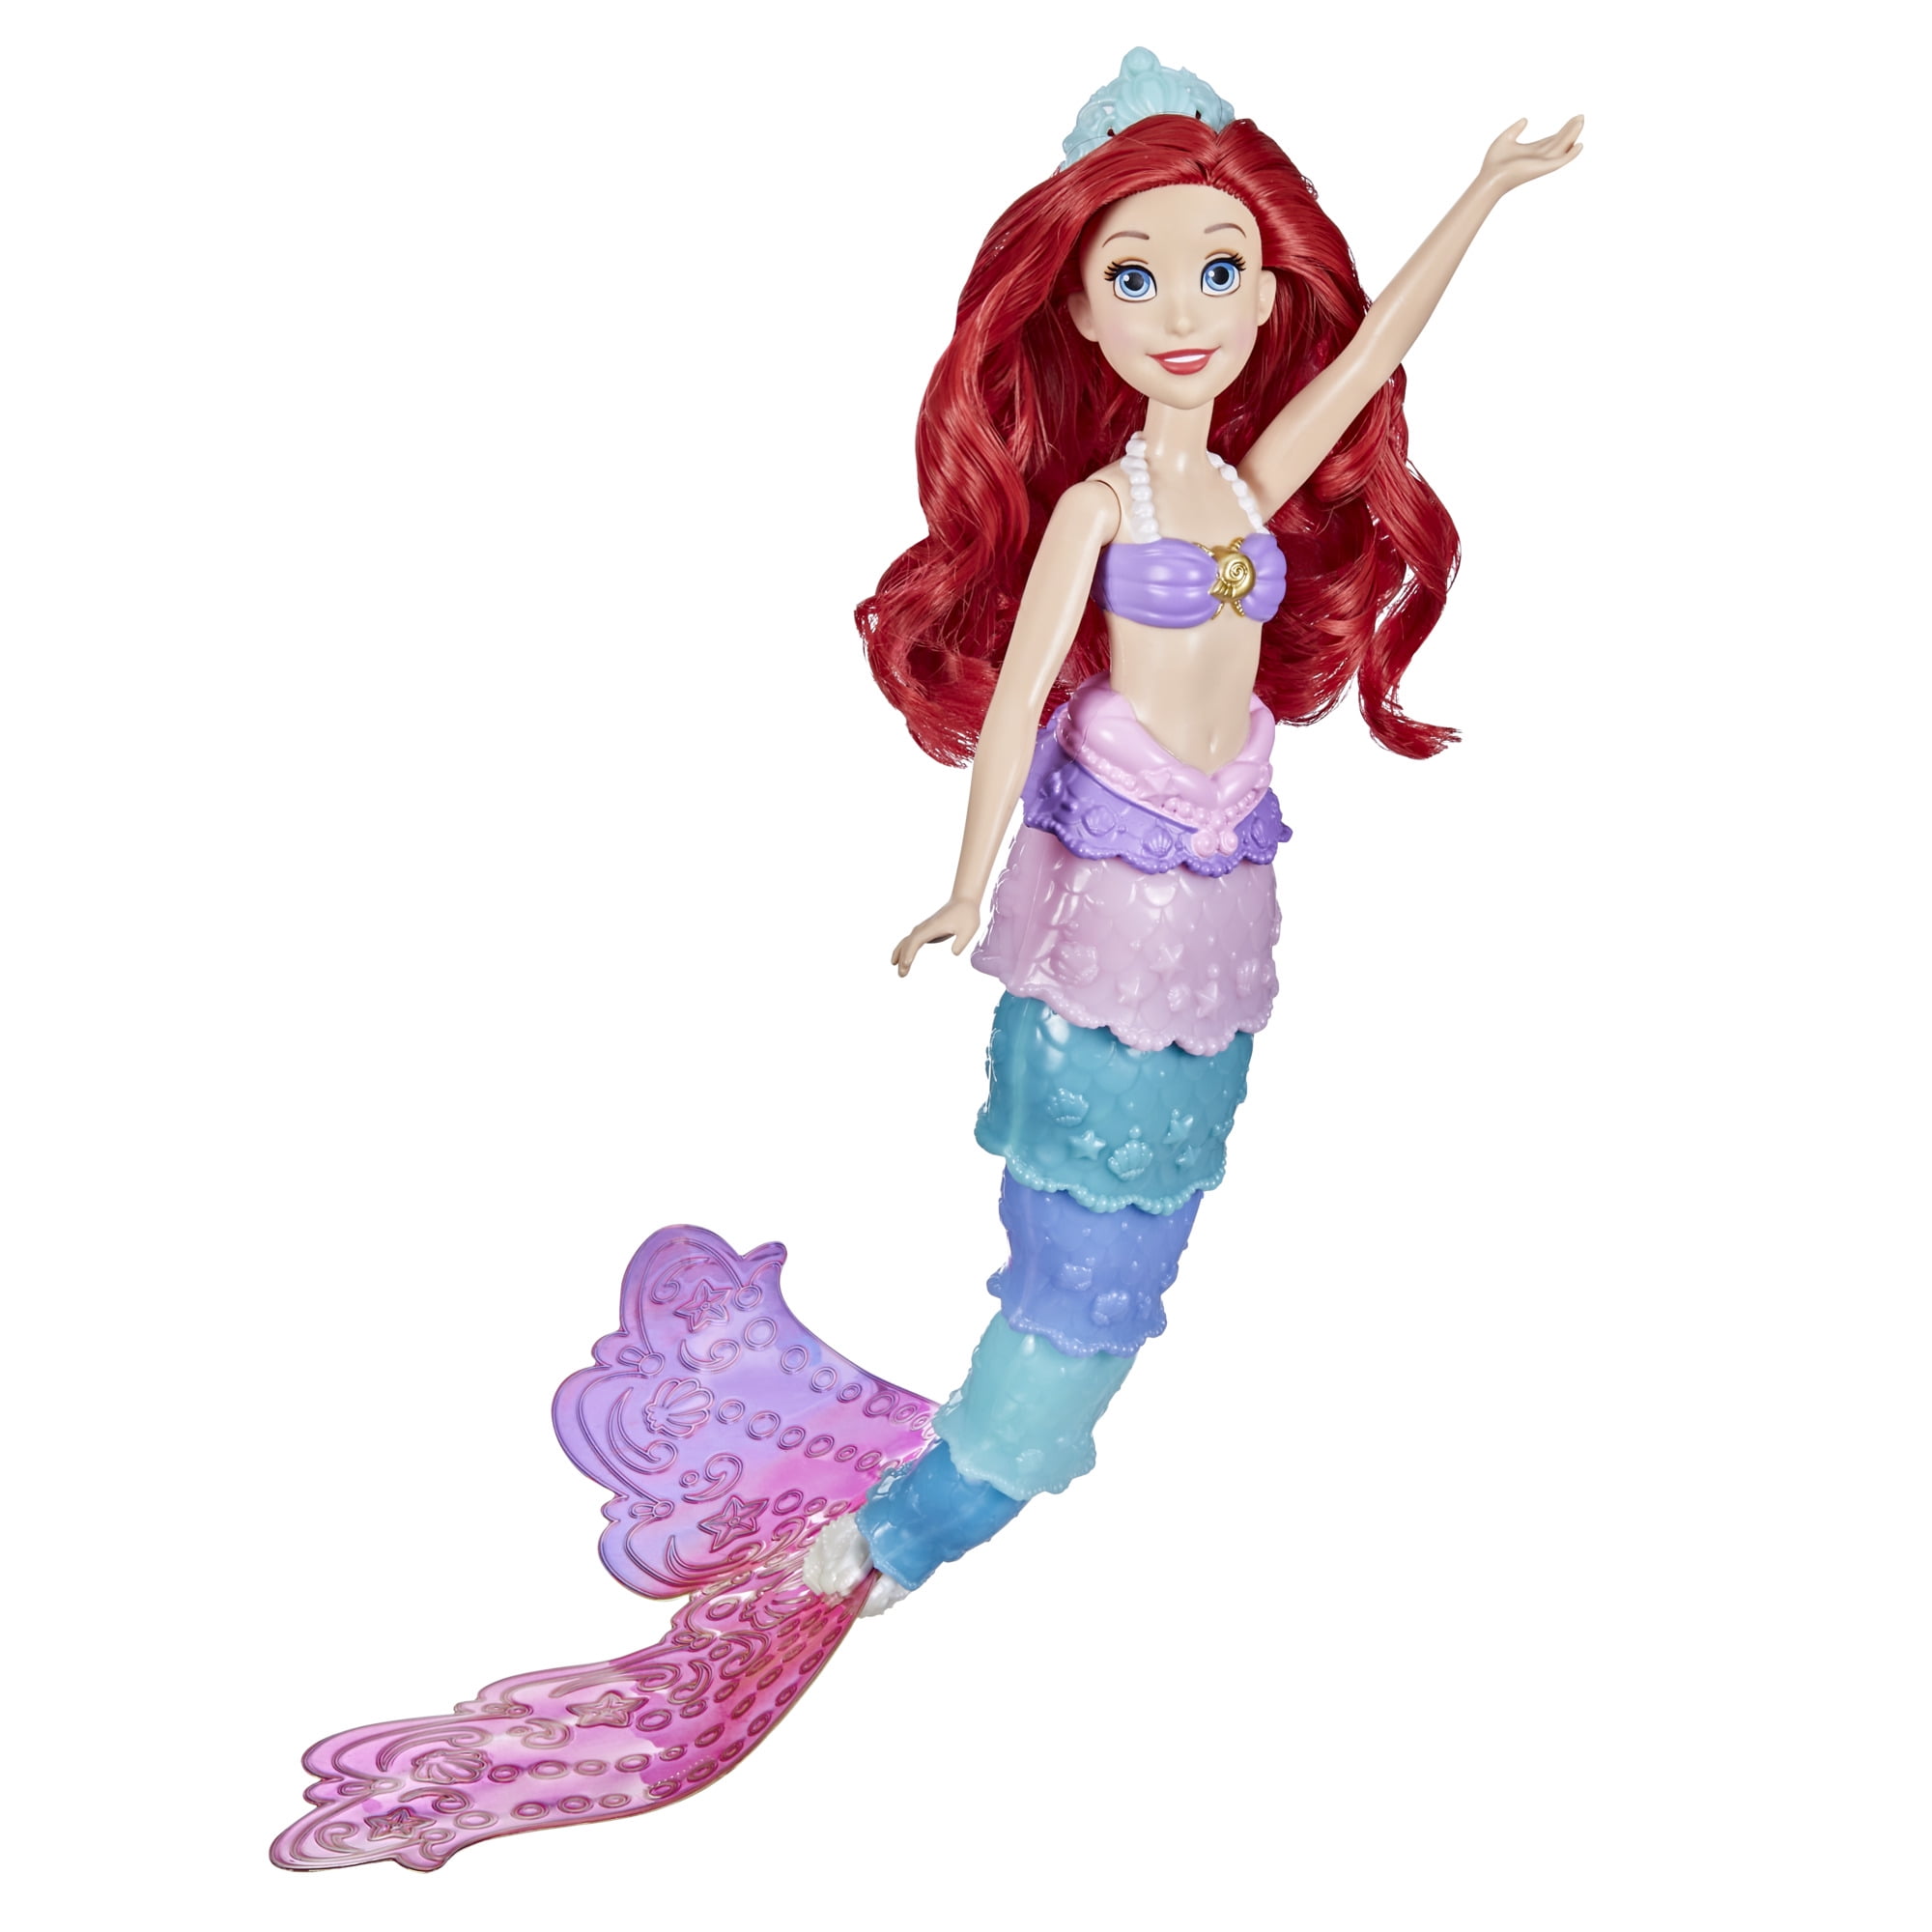 Disney Princess Mermaid Jump Rope 7 foot Girls Exercise & Fun for Children 6 